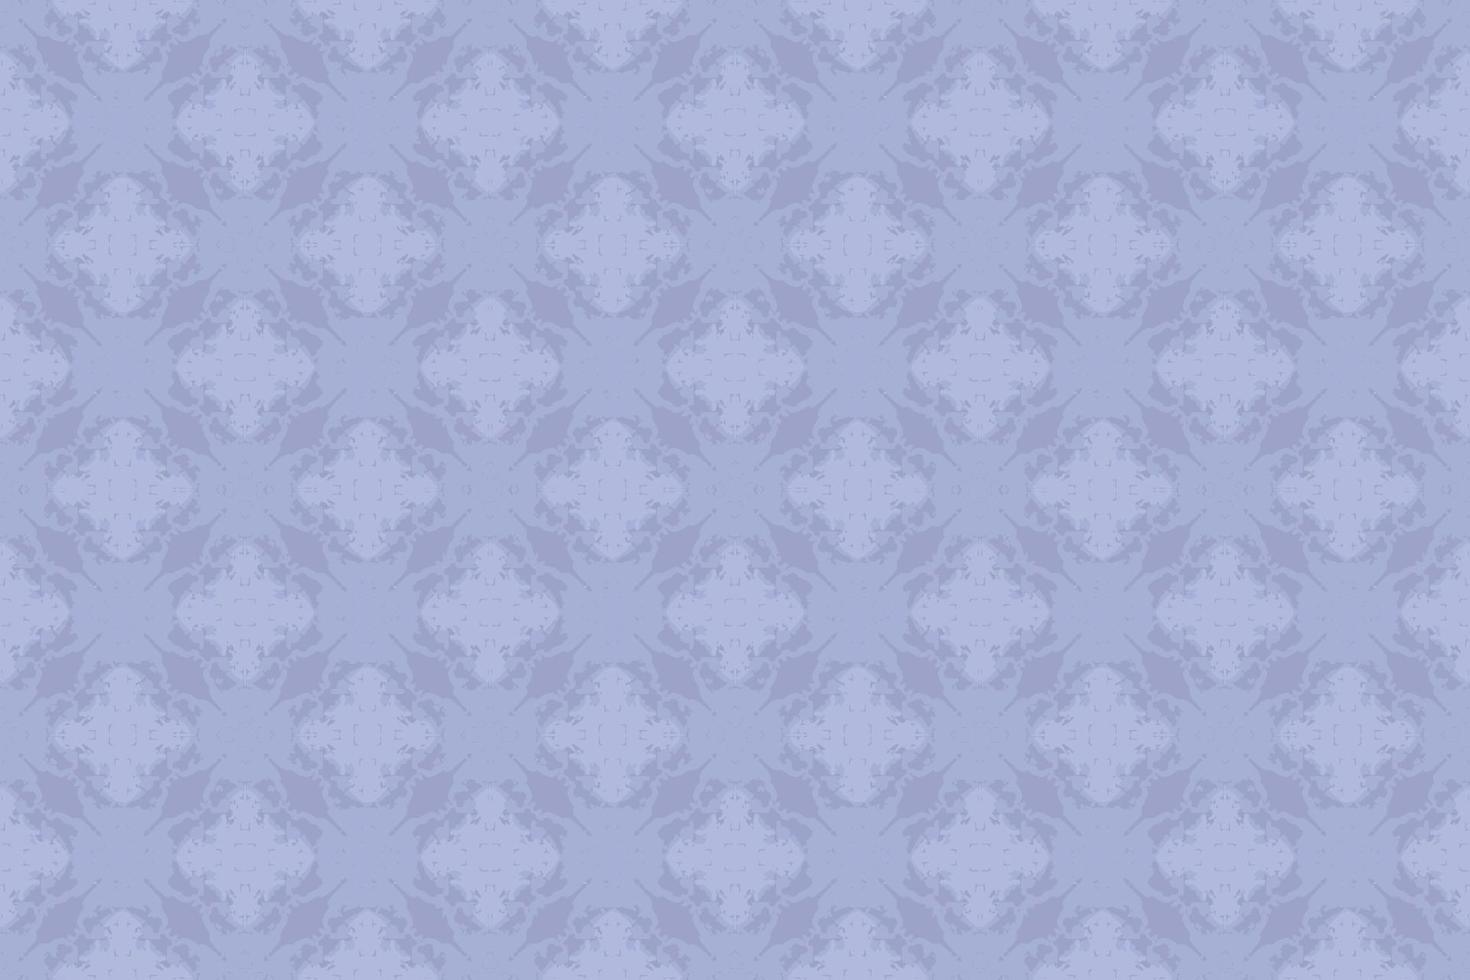 abstract naadloos patroon, naadloos behang, naadloos achtergrond ontworpen voor gebruik voor interieur, behang, kleding stof, gordijn, tapijt, kleding, batik, satijn, achtergrond, illustratie, borduurwerk stijl vector